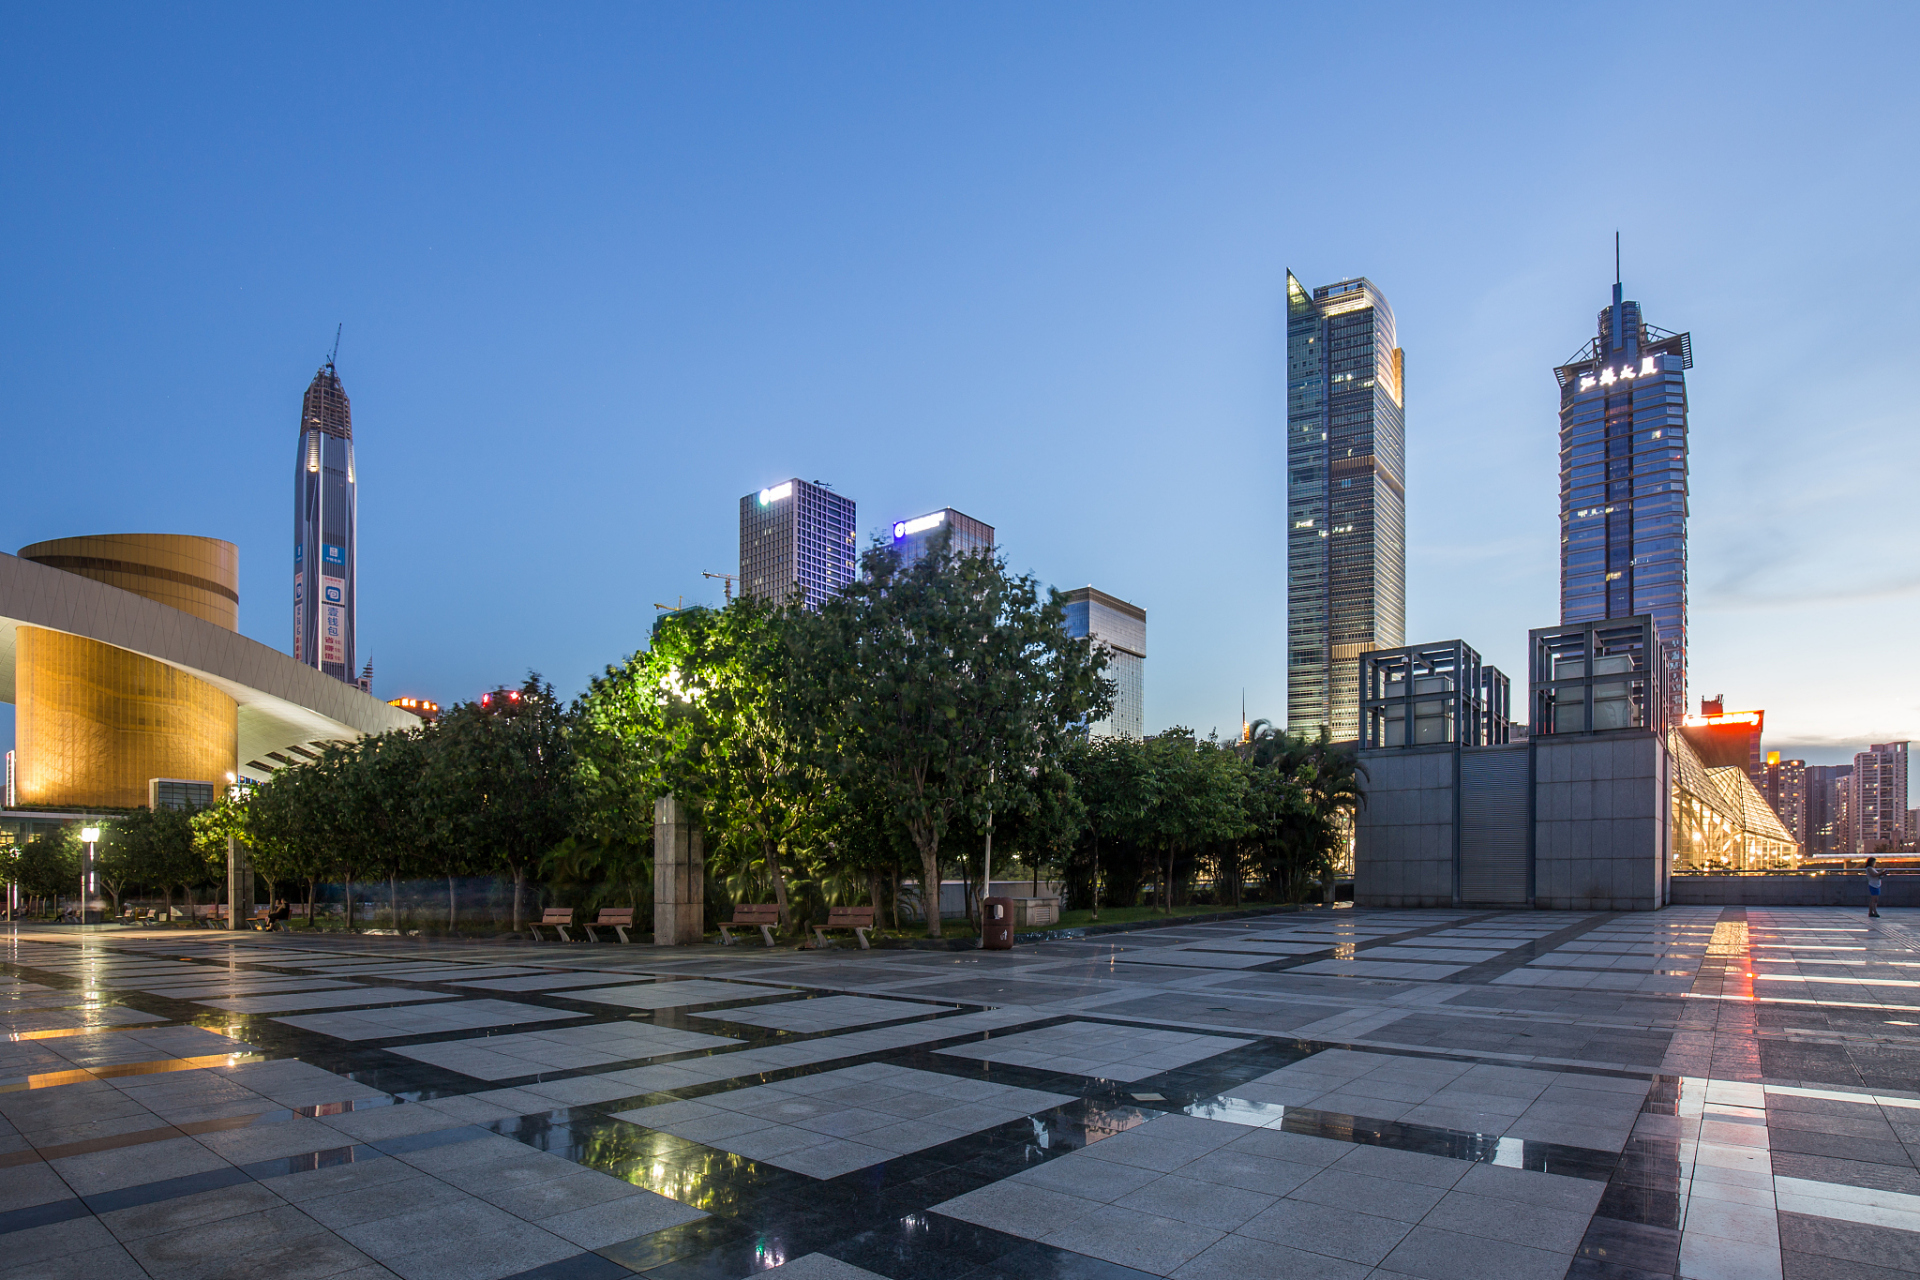 南京胜利广场是为纪念中国人民解放军渡江战役胜利而兴建的,具有重要